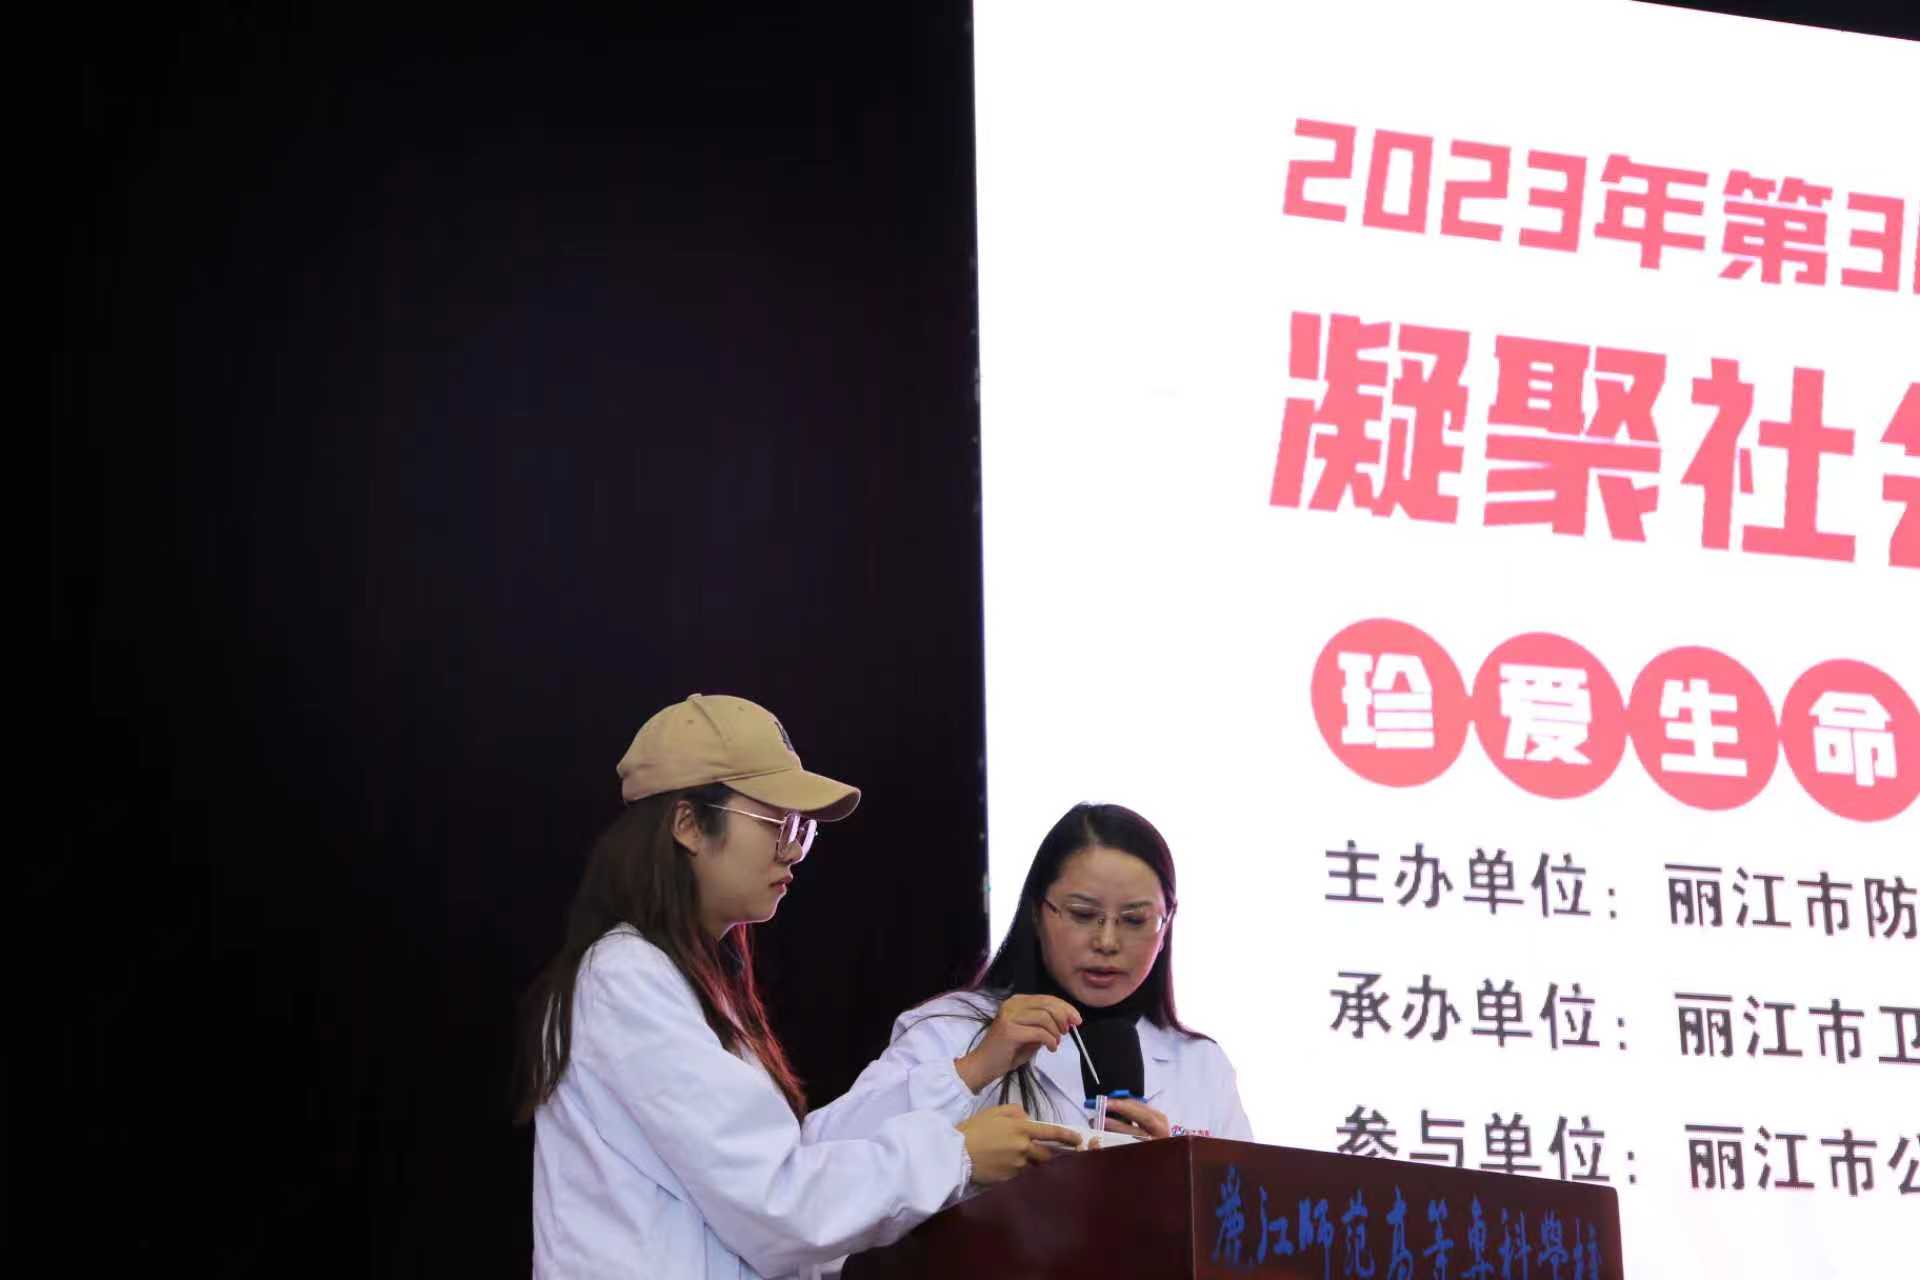 丽江市举办第36个“世界艾滋病日”宣传活动，呼吁凝聚社会力量共抗艾滋病 (6).jpg